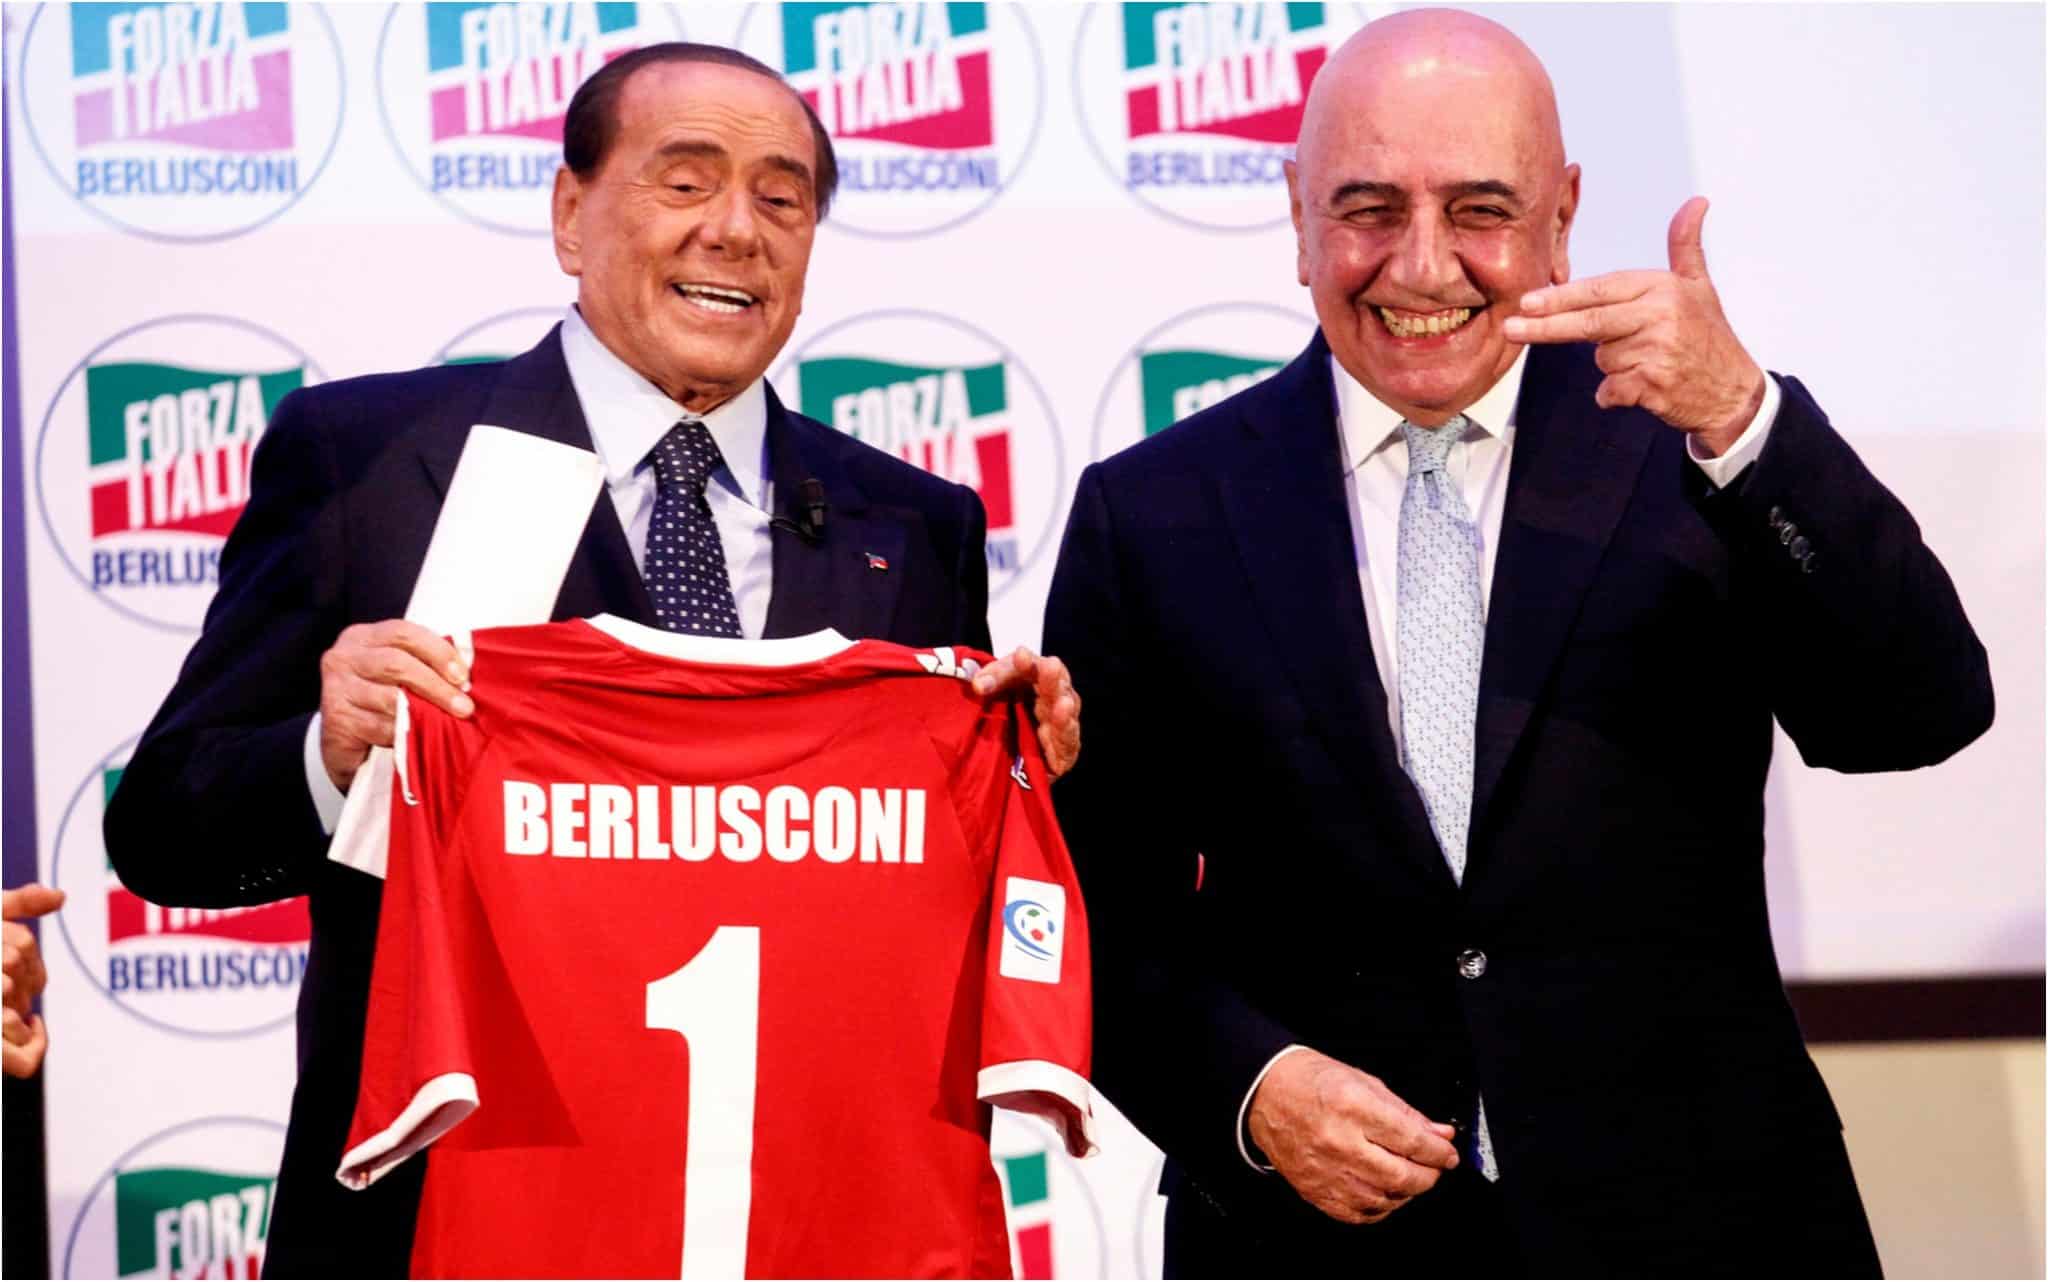 Le retour de Galliani et Berlusconi en Serie A est un échec, 0 point sur les 3 premiers matchs de championnat